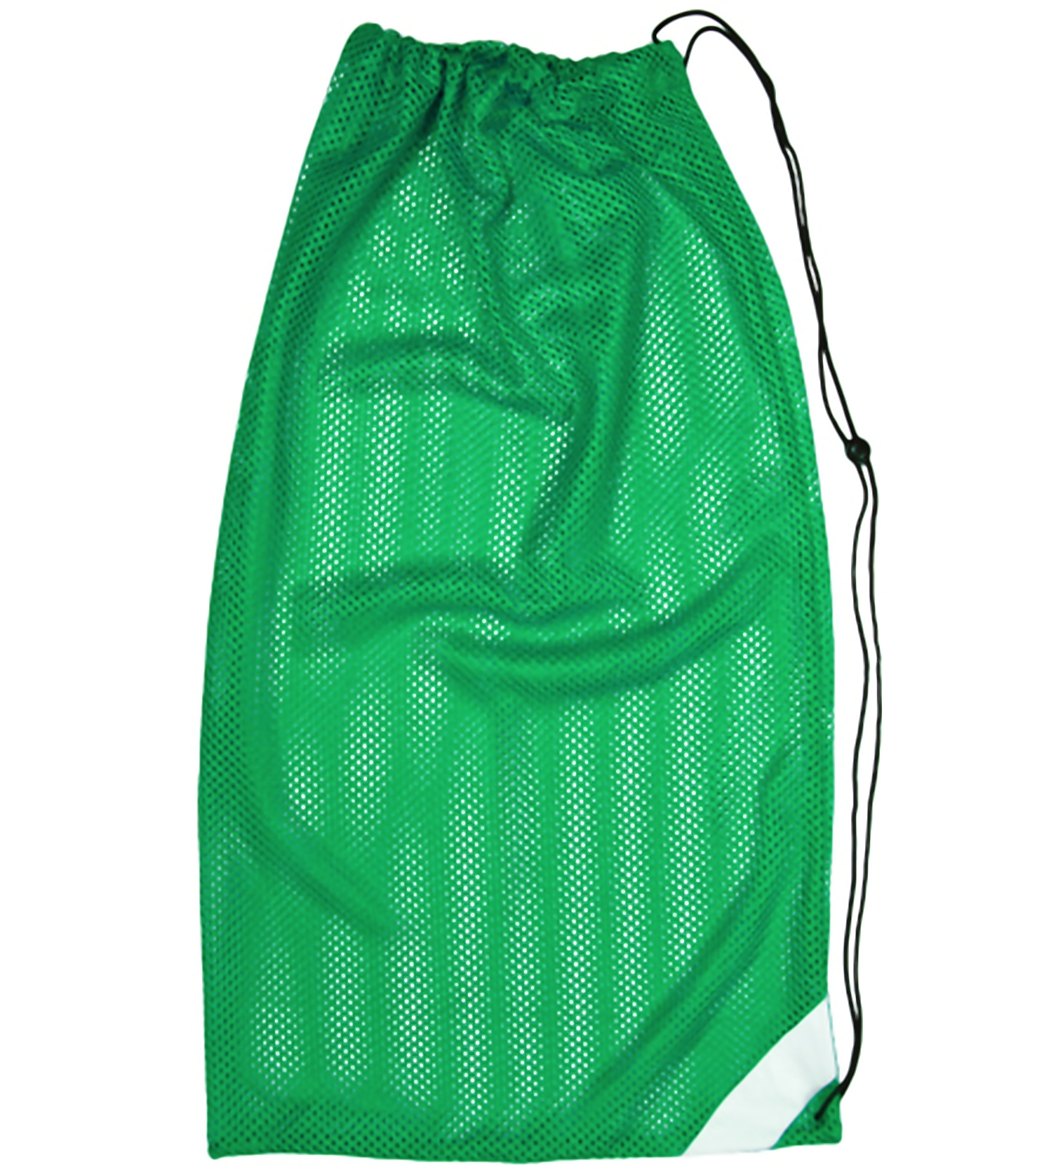 Bettertimes Mesh Bag - Green - Swimoutlet.com